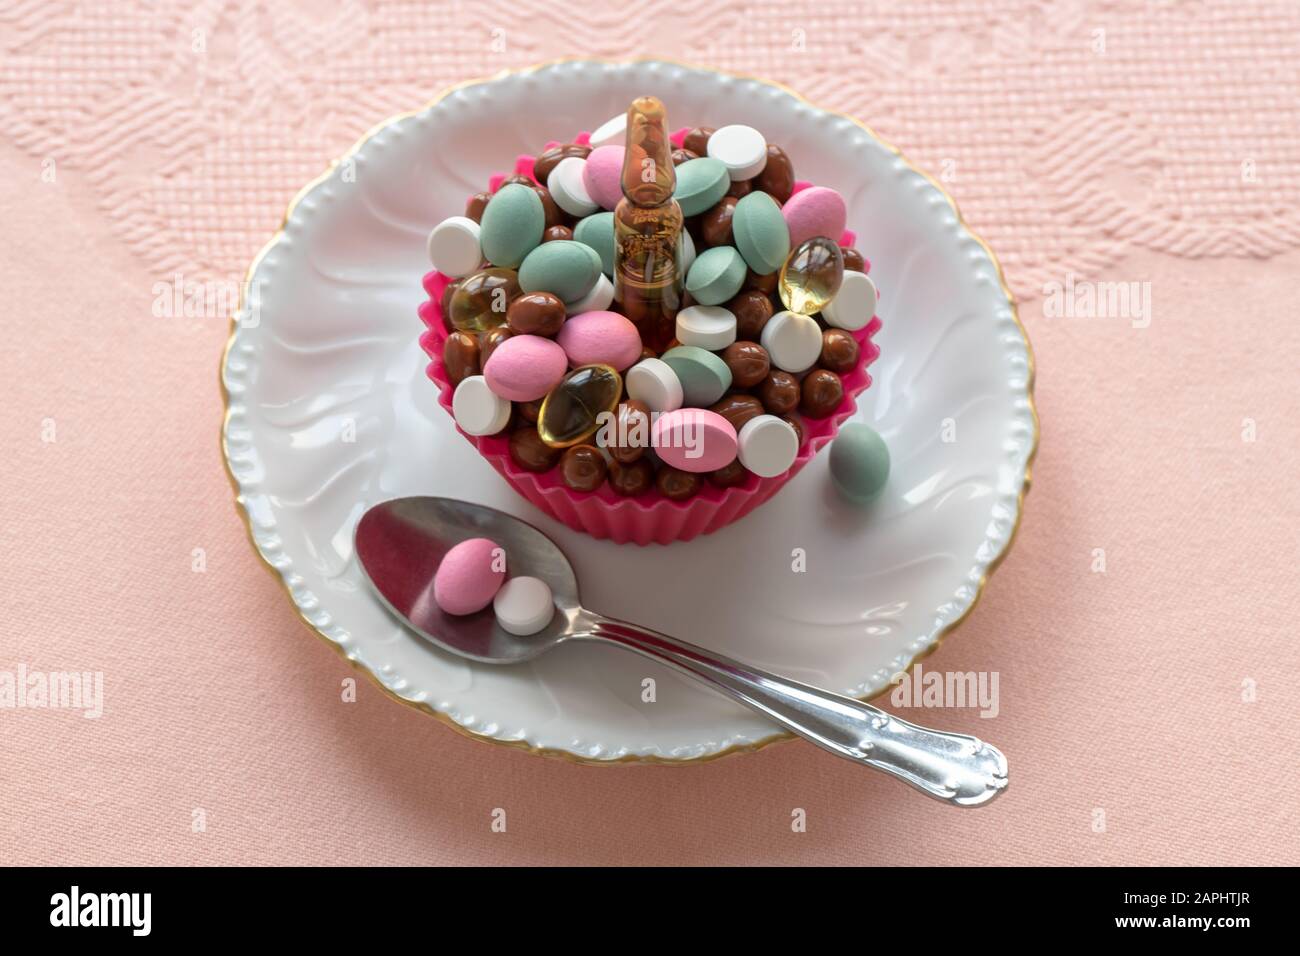 Cupcake fait de pilules sur une plaque blanche et de nappe rose. Prêt à manger. Consommation, utilisation et abus de produits pharmaceutiques. Banque D'Images